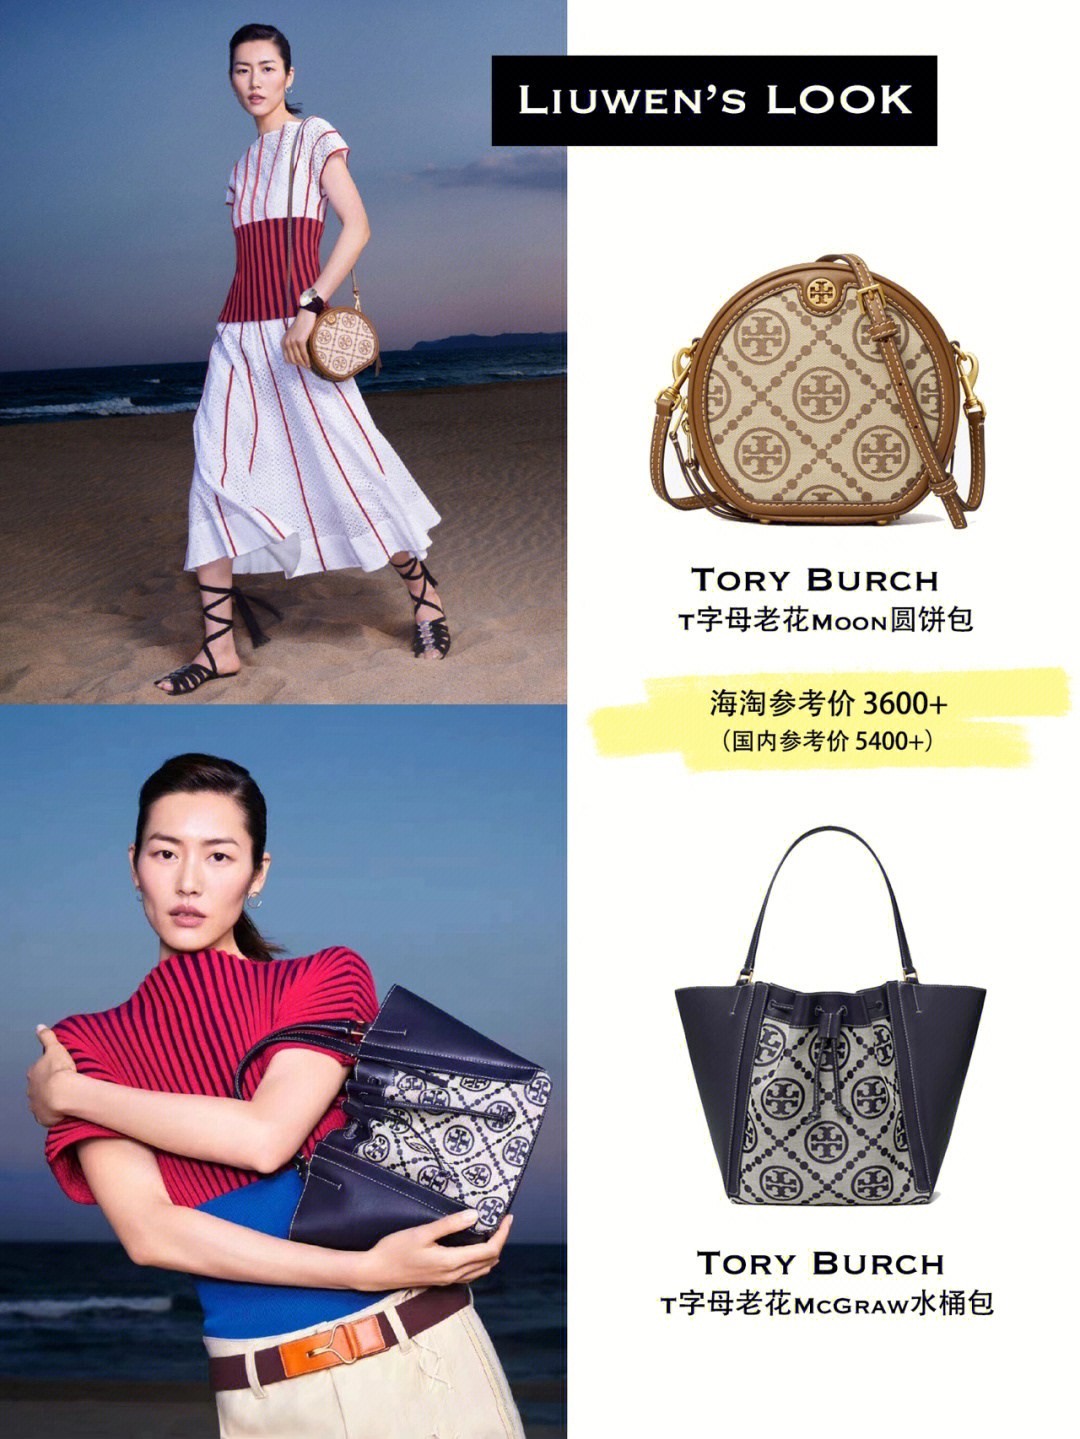 tory burch 2022春夏系列包包上新,邀请到大表姐刘雯演绎最新海报!